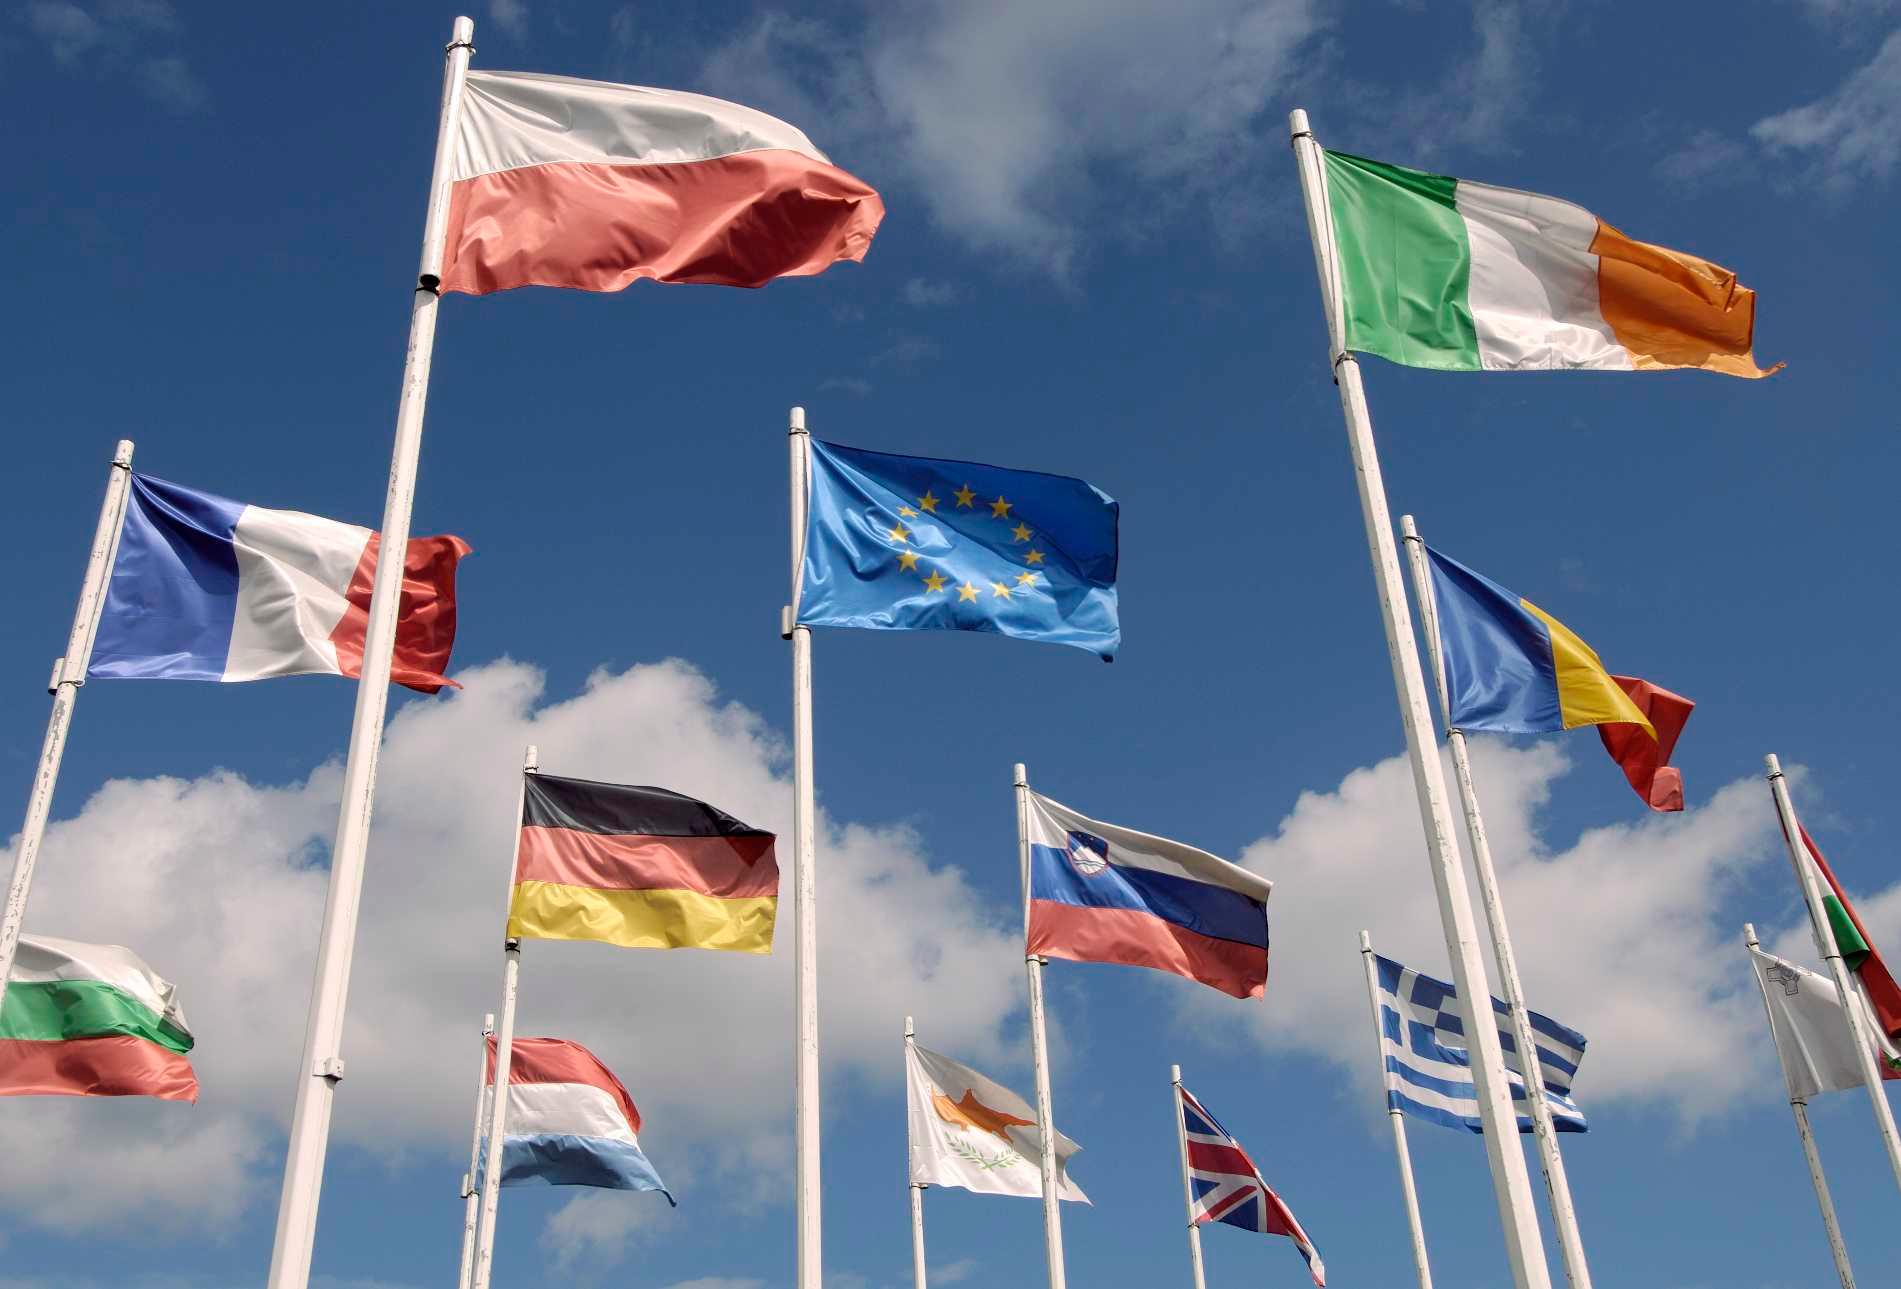 Bild: Flaggen unterschiedlicher Länder, in der Mitte die der Europäischen Union